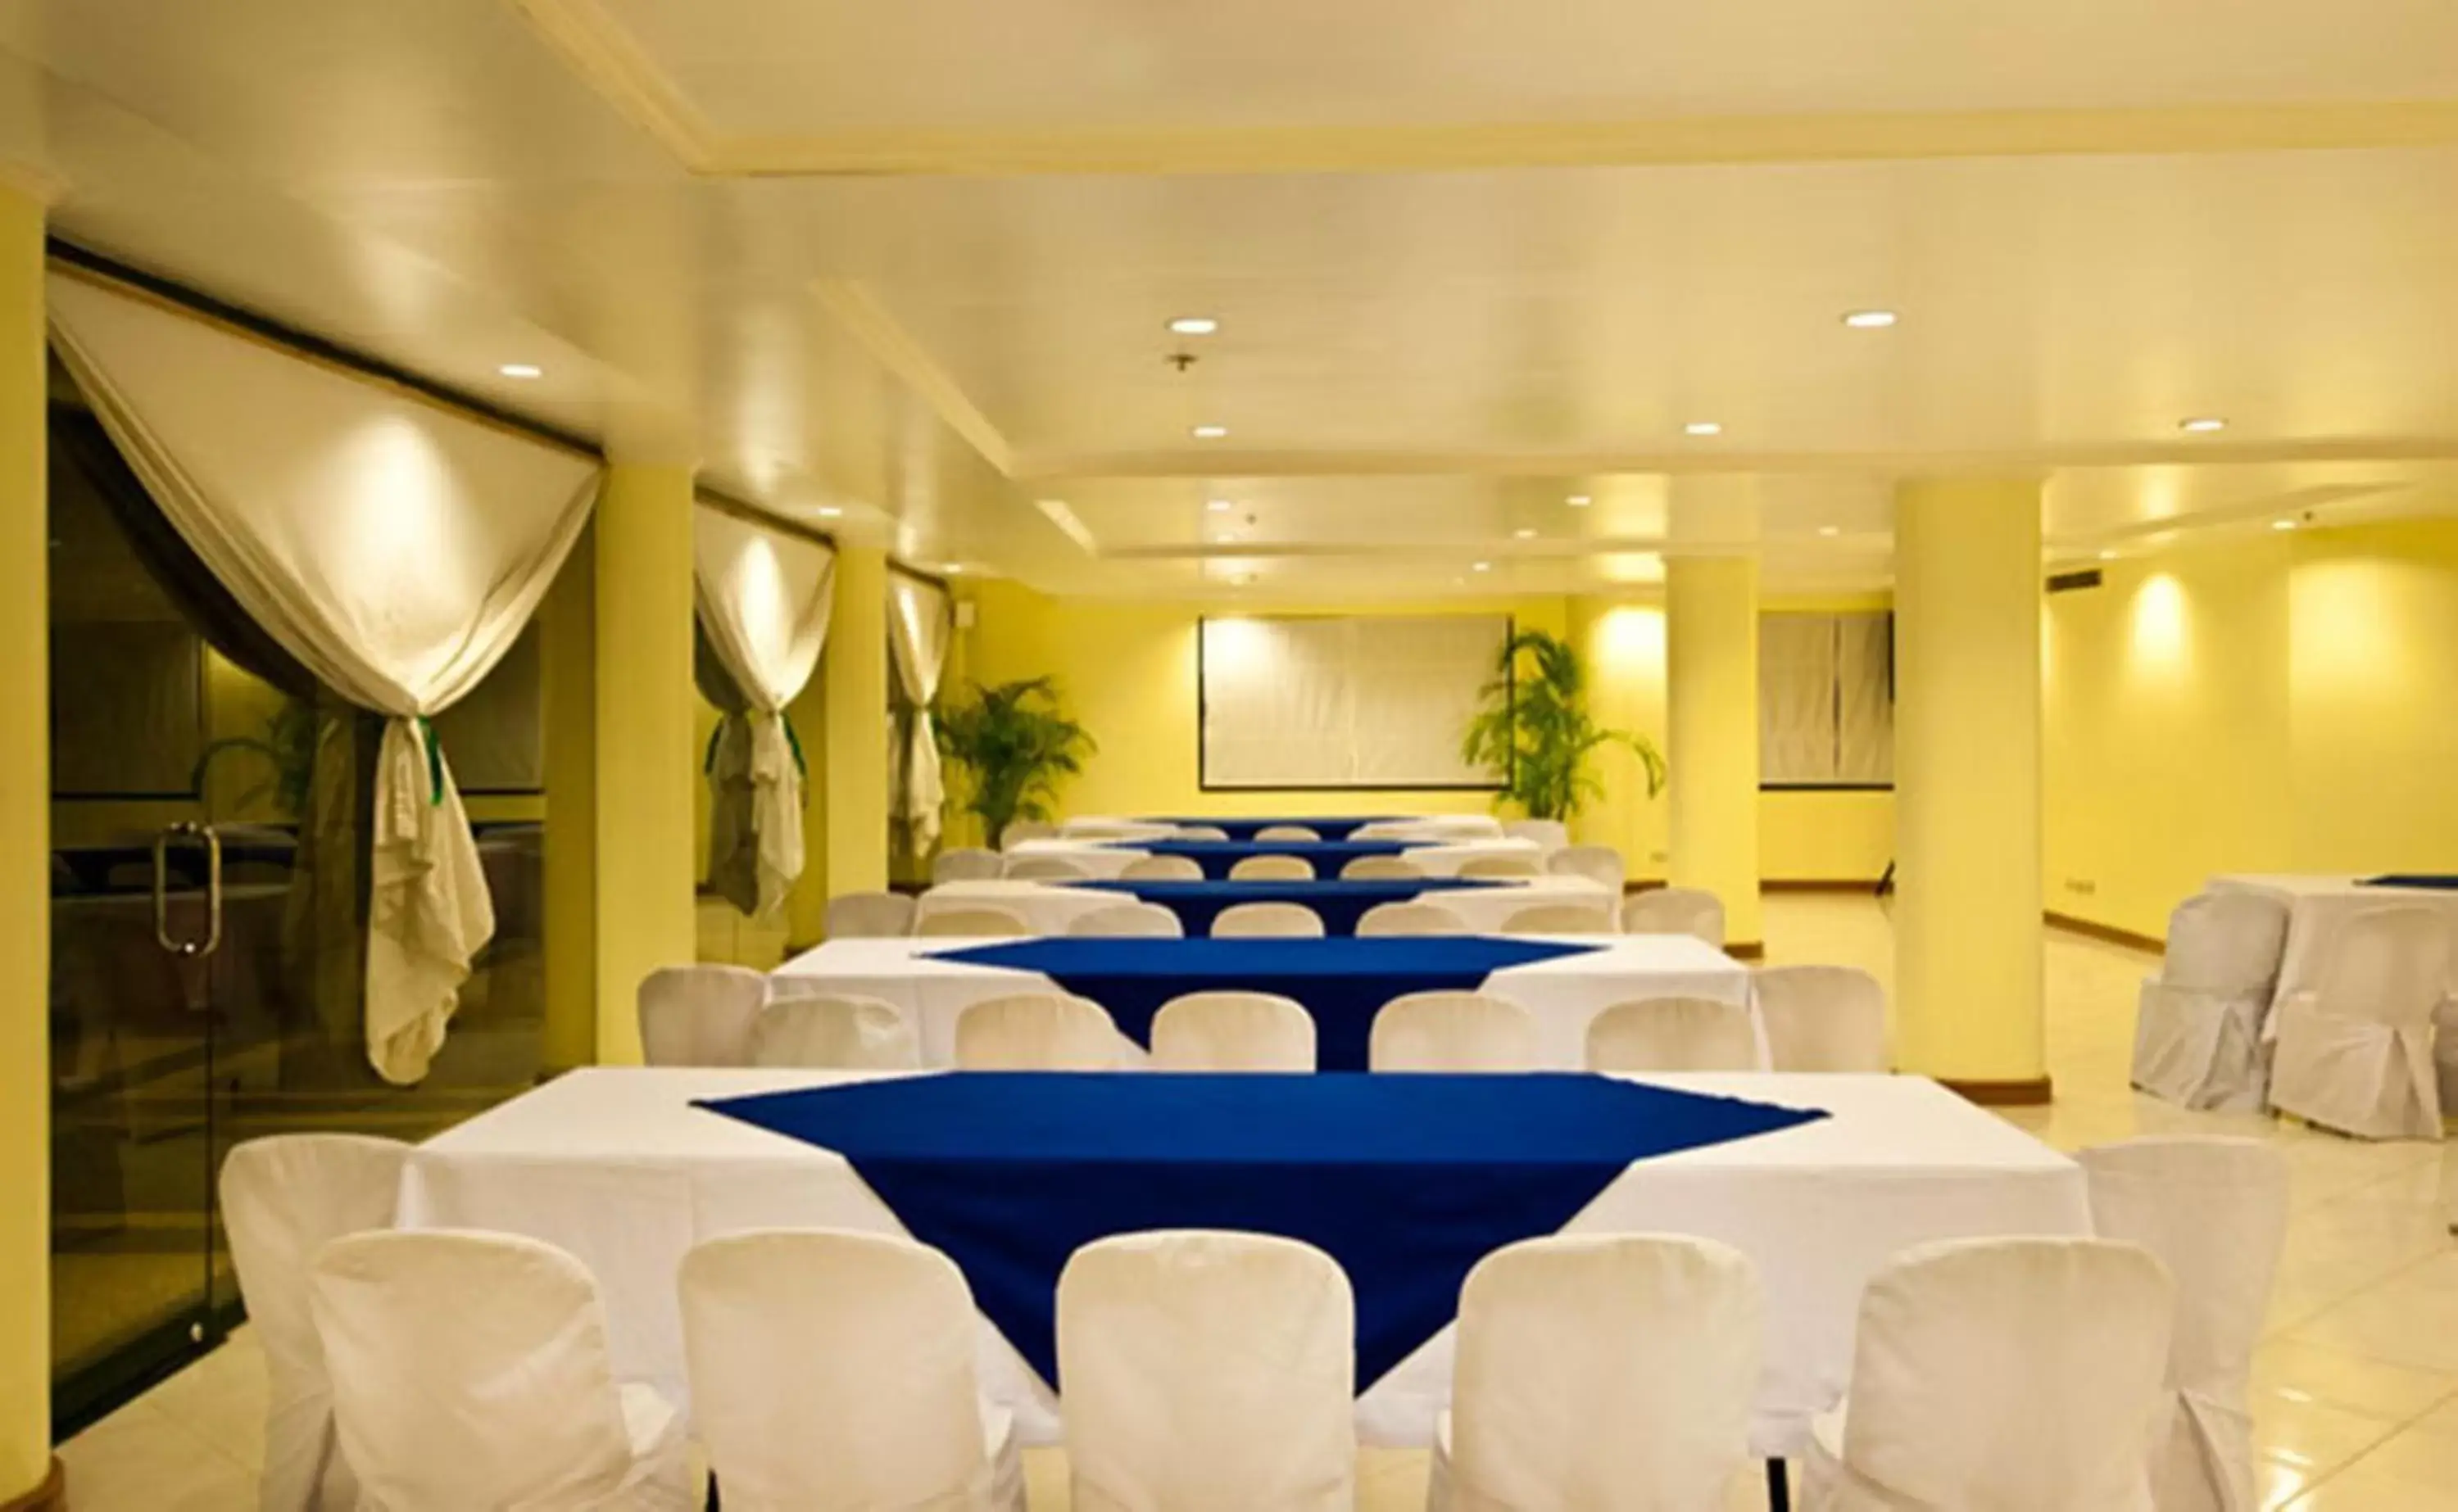 Banquet/Function facilities, Banquet Facilities in Hotel Fleuris